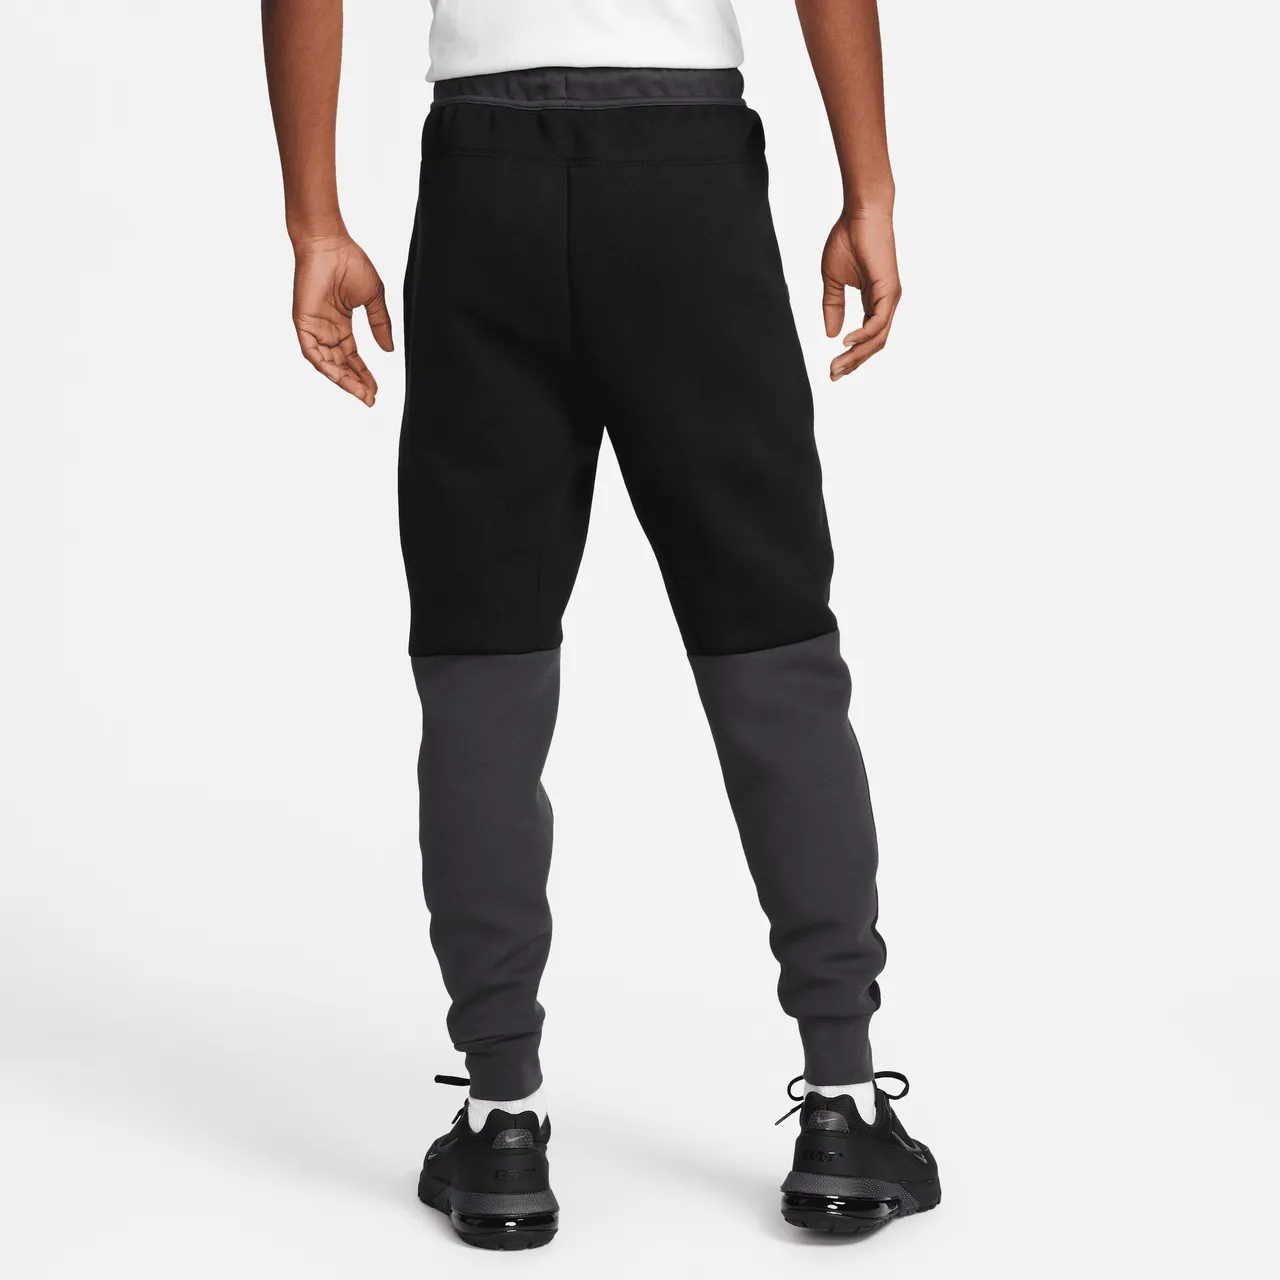 Nike Sportswear Tech Fleece Men's Joggers - Black - Cotton